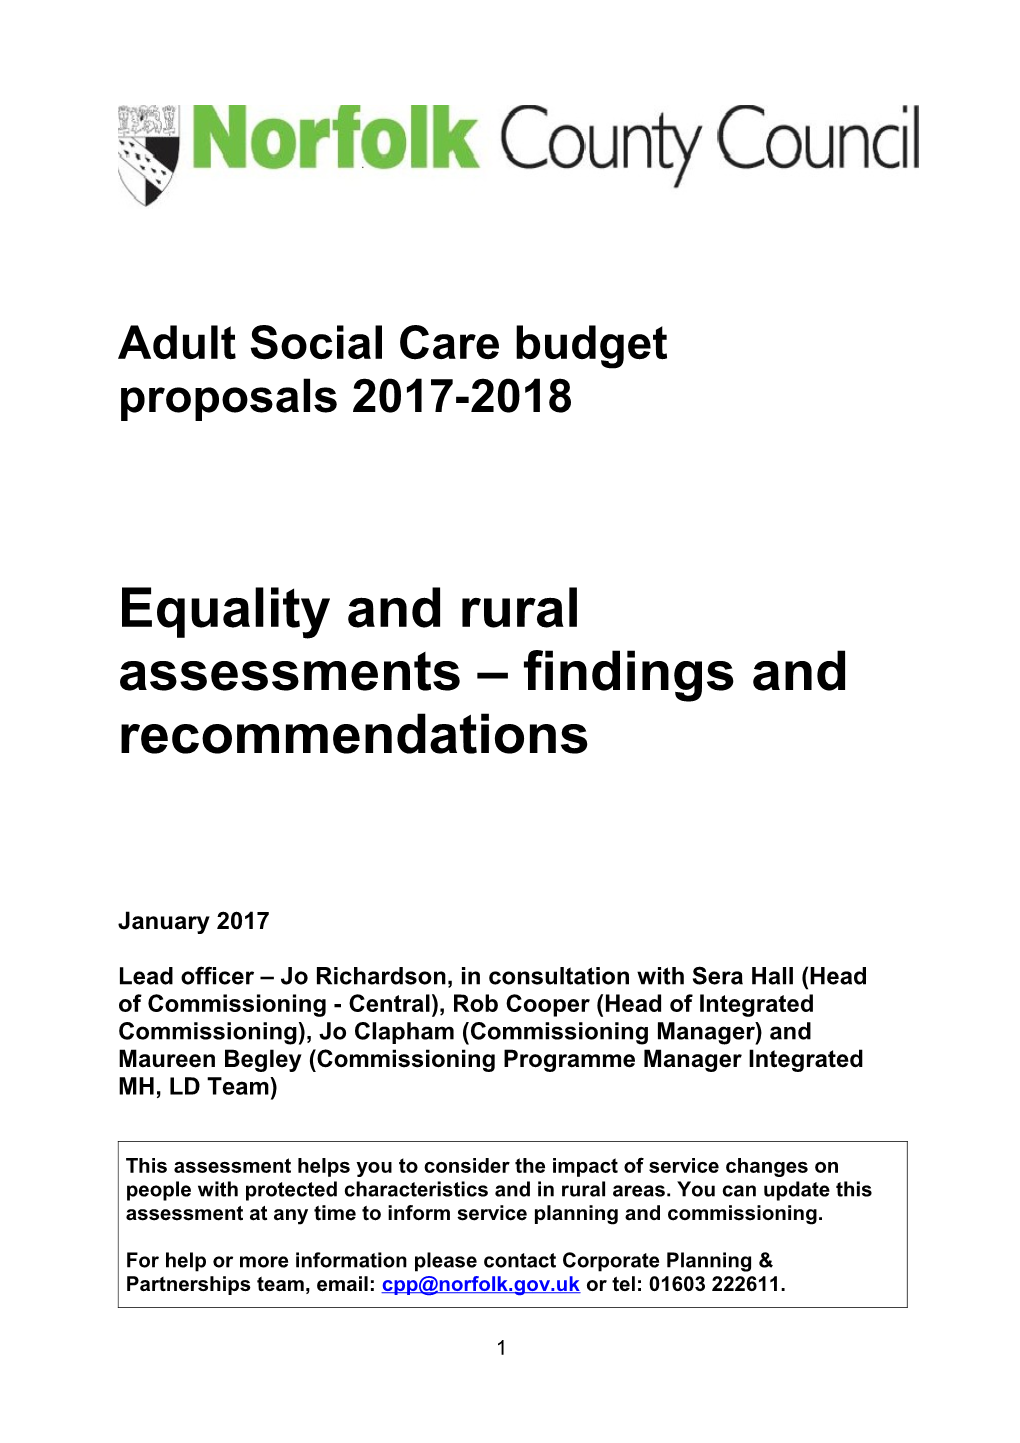 Adult Social Care Budget Proposals 2017-2018